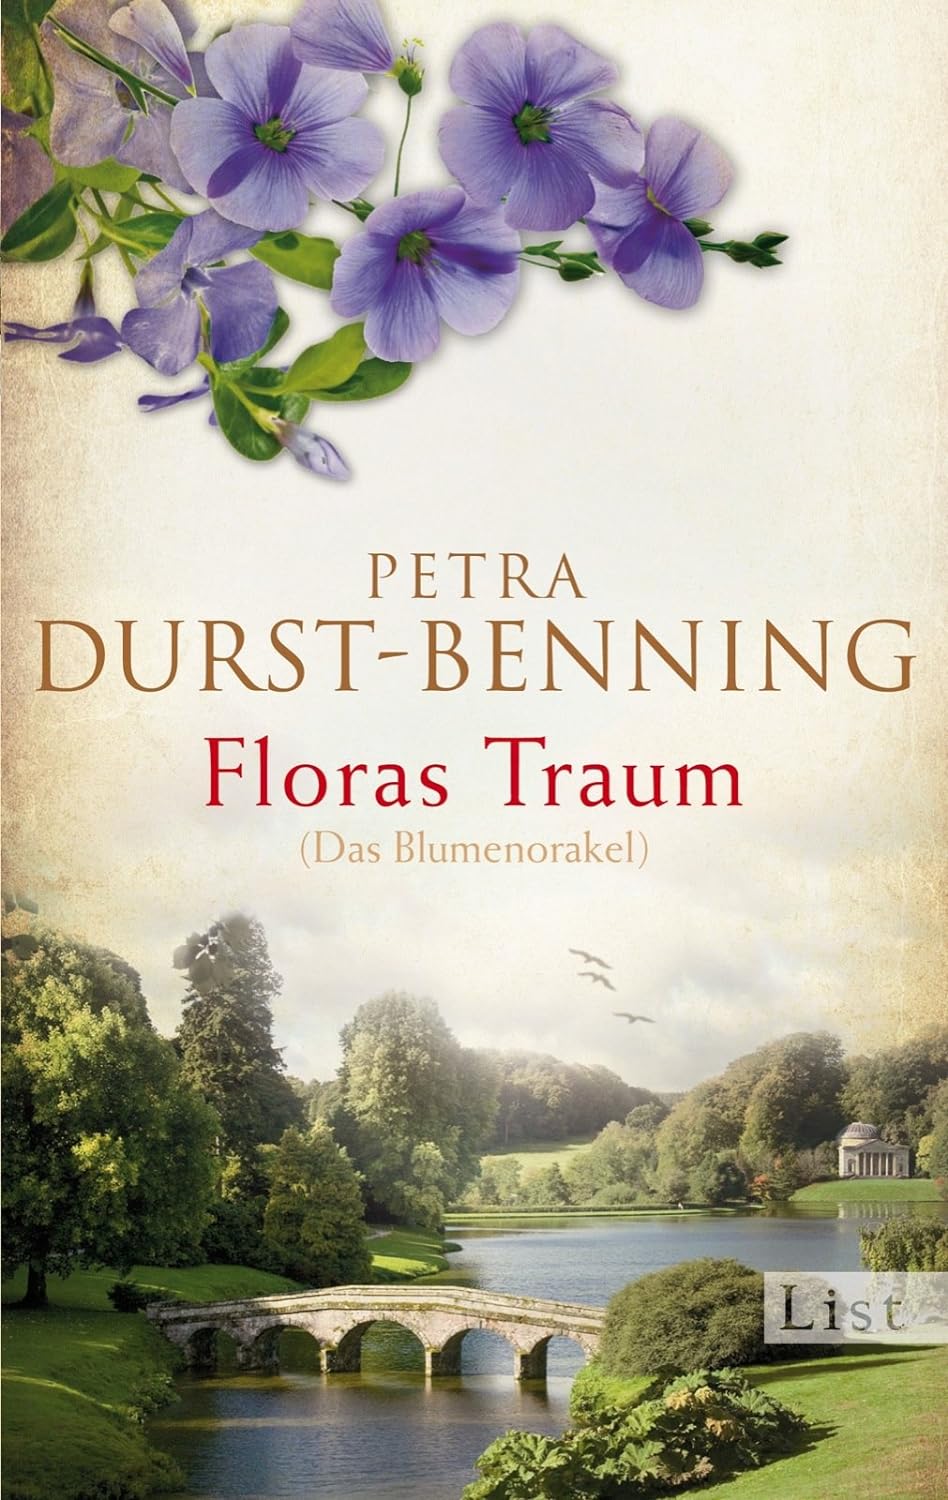 Buch: Floras Traum (Das Blumenorakel) Petra Durst-Benning